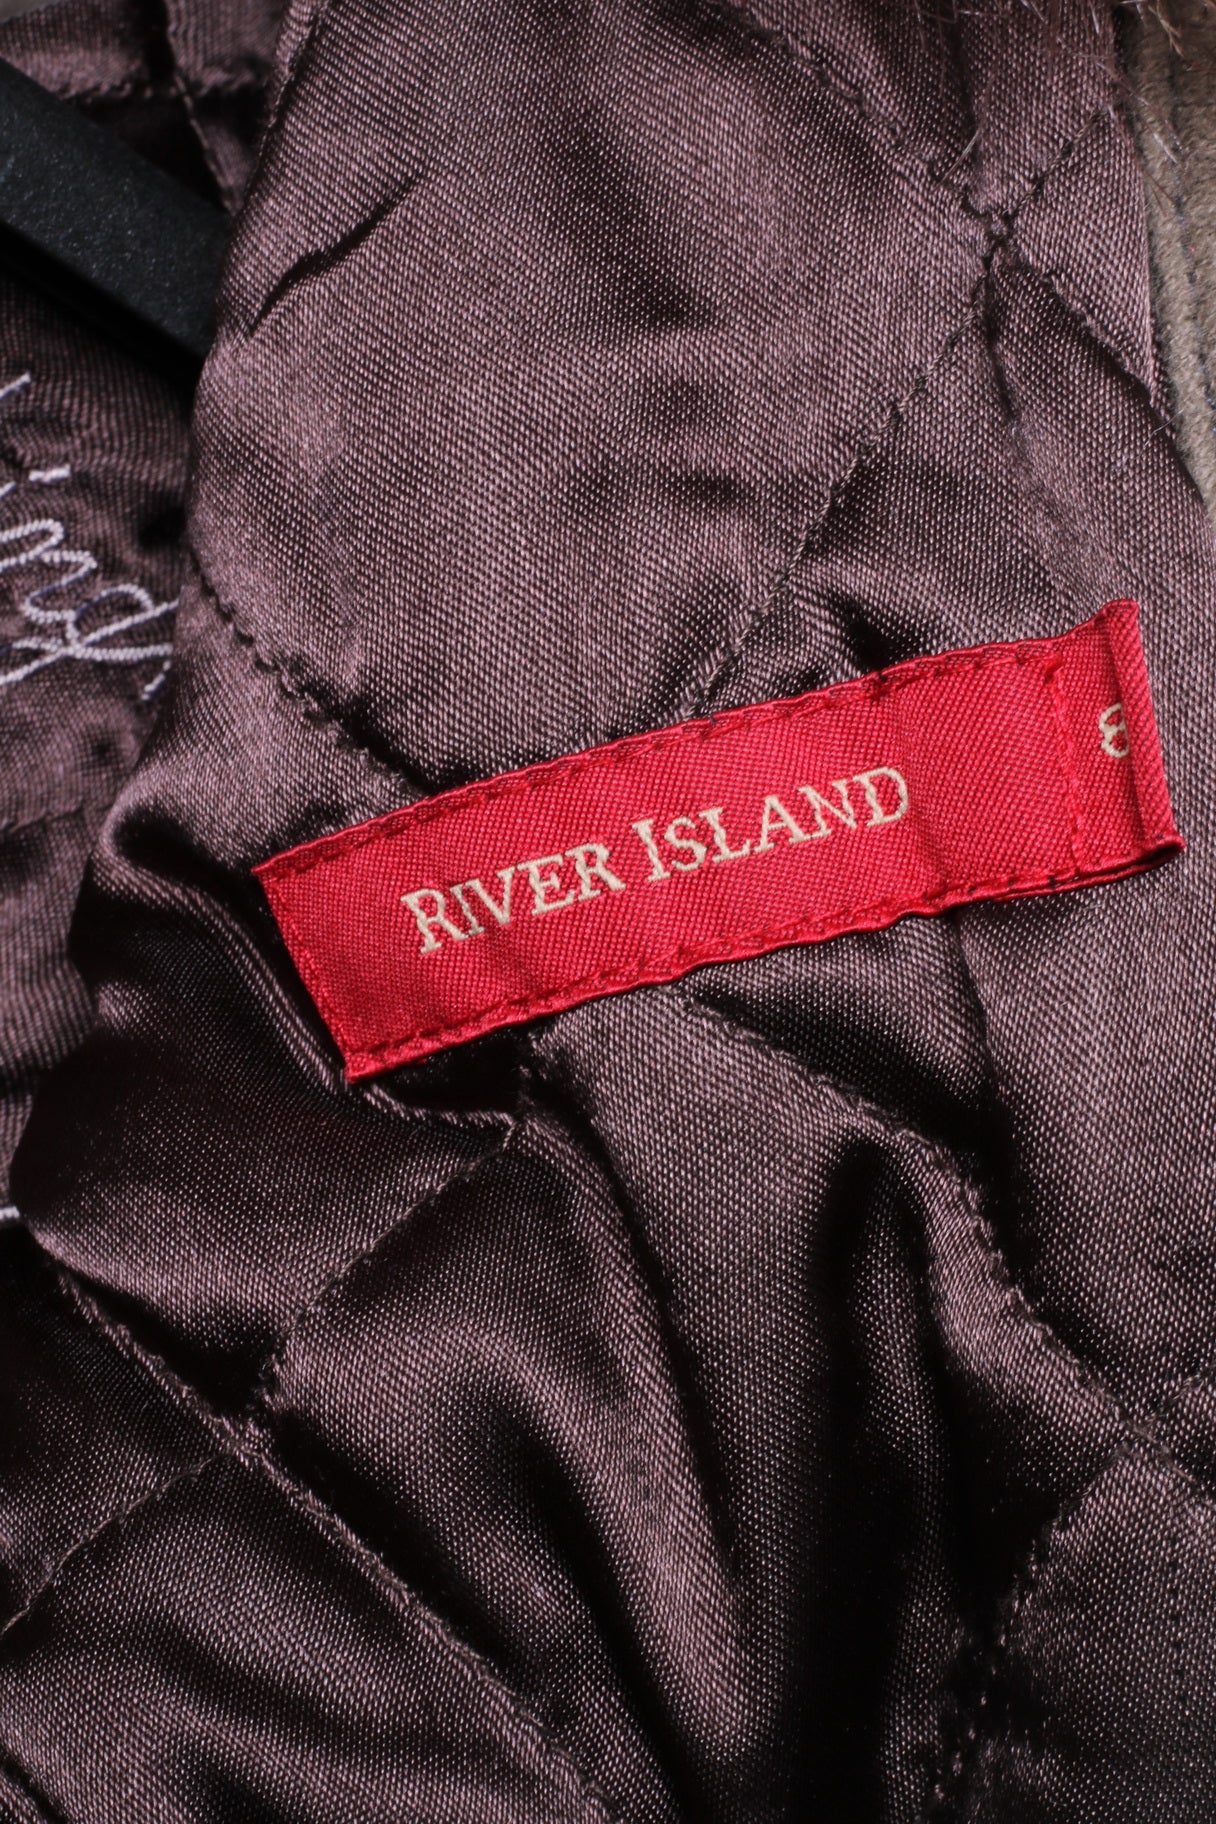 River Island Veste femme 34 8 S en coton marron avec col en fourrure brodé